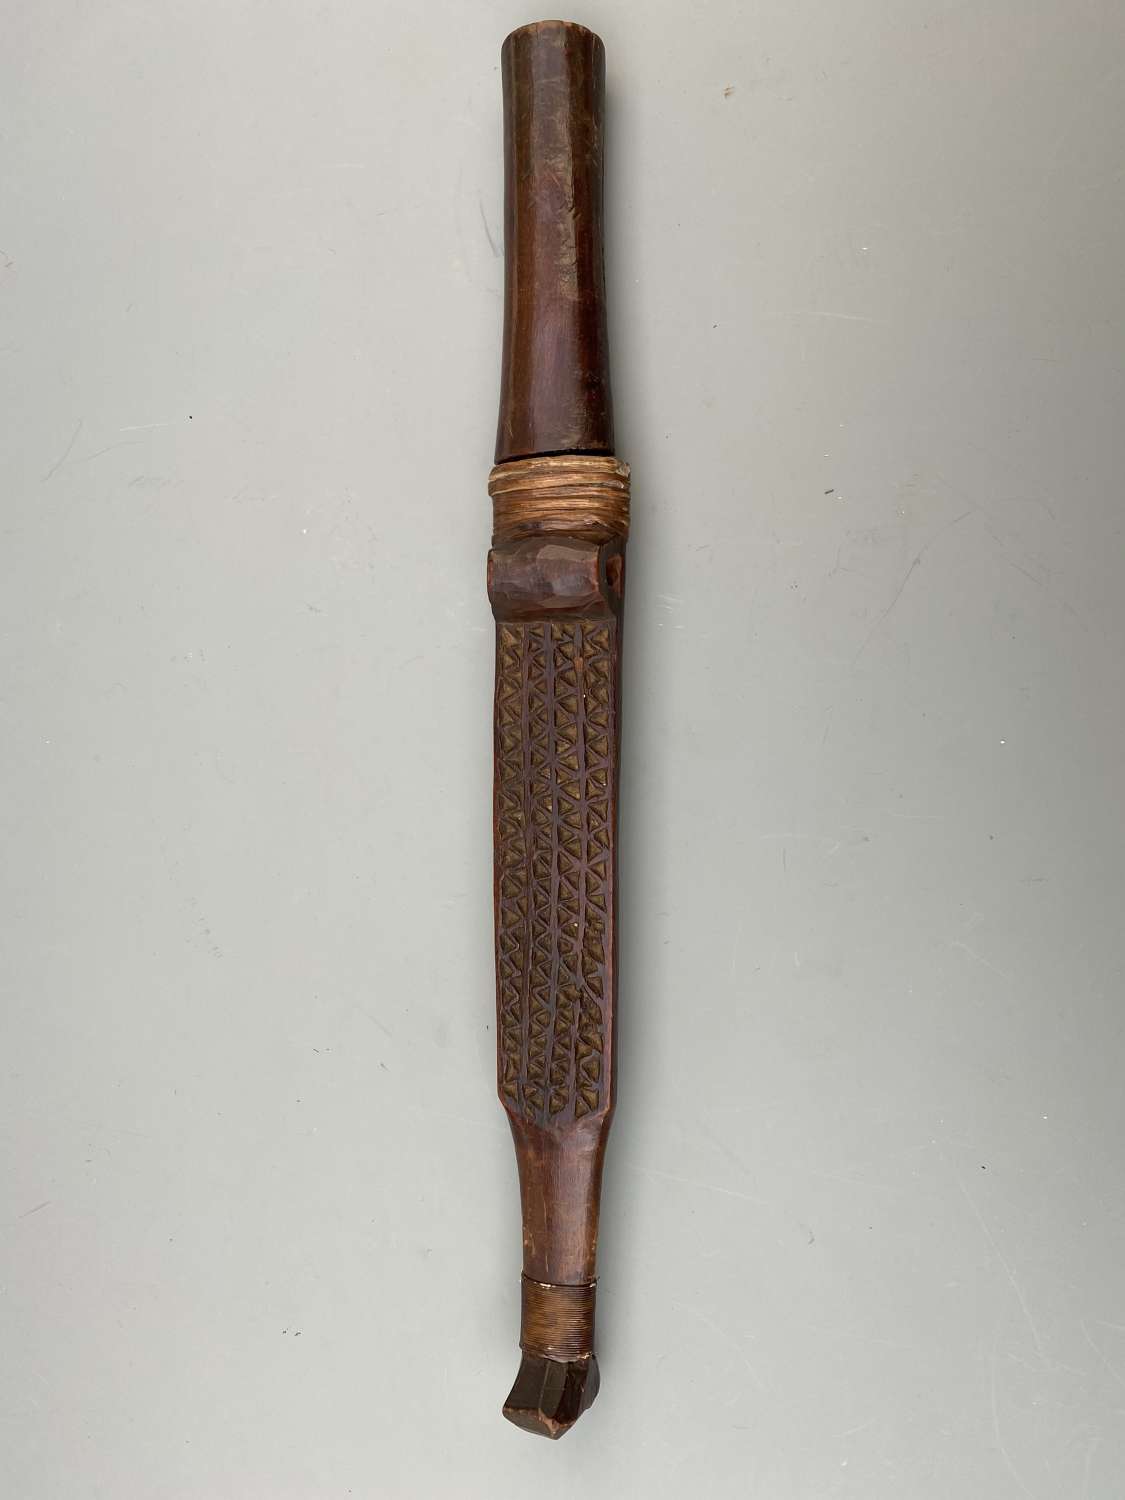 Shona dagger with carved wooden sheath Zimbabwa  Africa